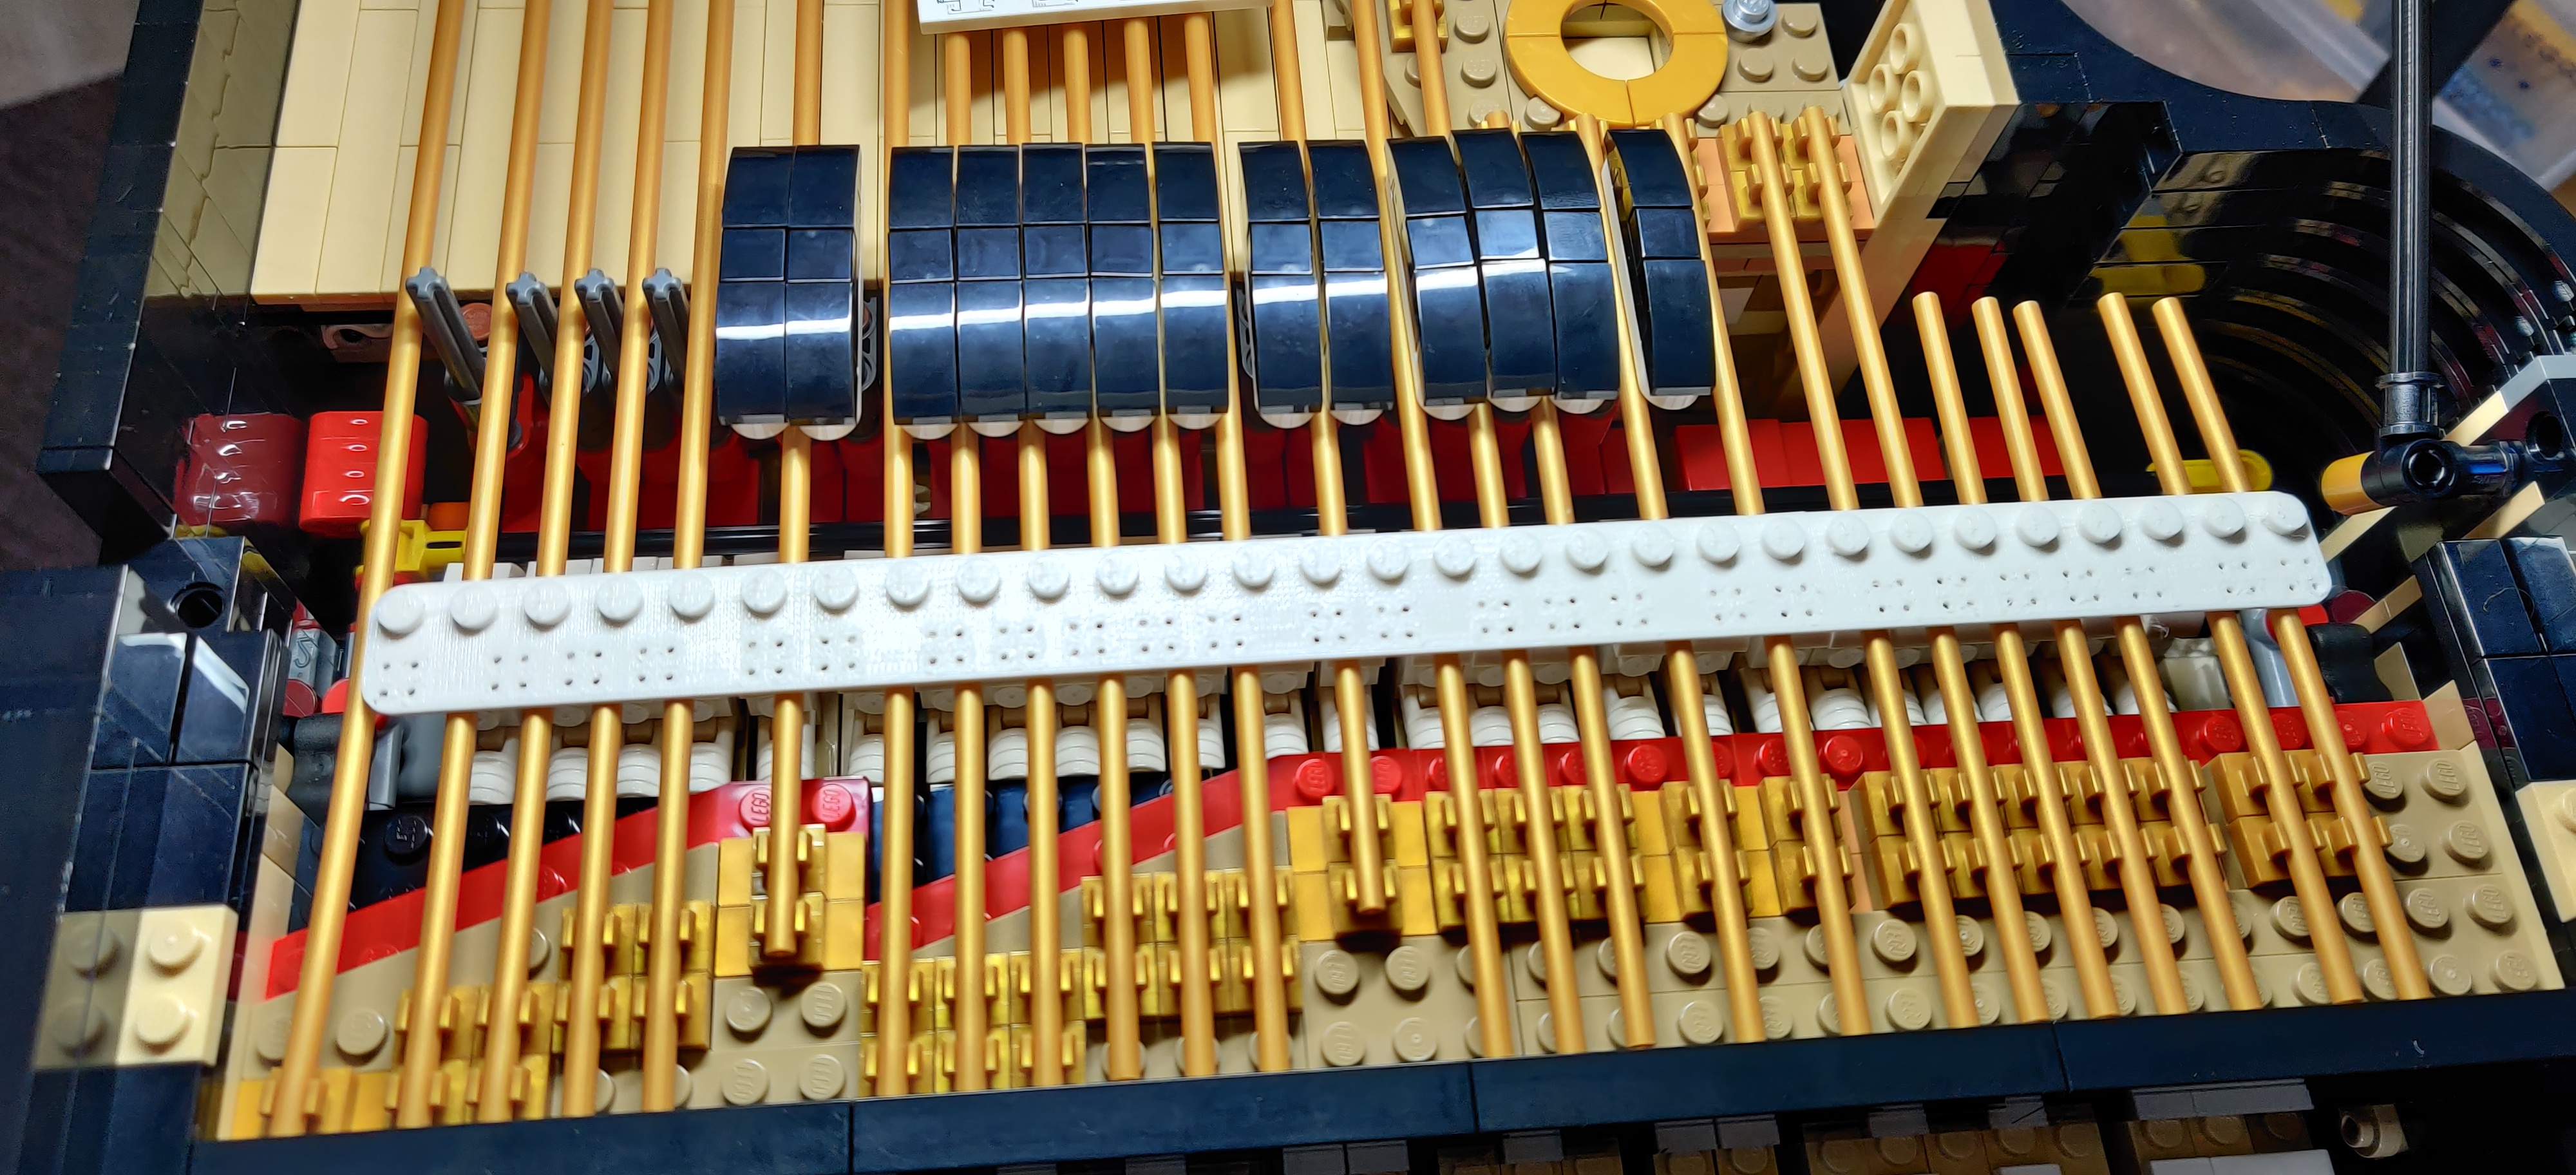 rettangolo di plastica bianca prodotto da una stampante 3D,
di dimensioni pari a 29×2 pezzi Lego, con 25 gruppi di 4 fori
ciascuno per reggere i sensori, appoggiato sopra le "corde"
del pianoforte; i fori sono allineati coi martelletti